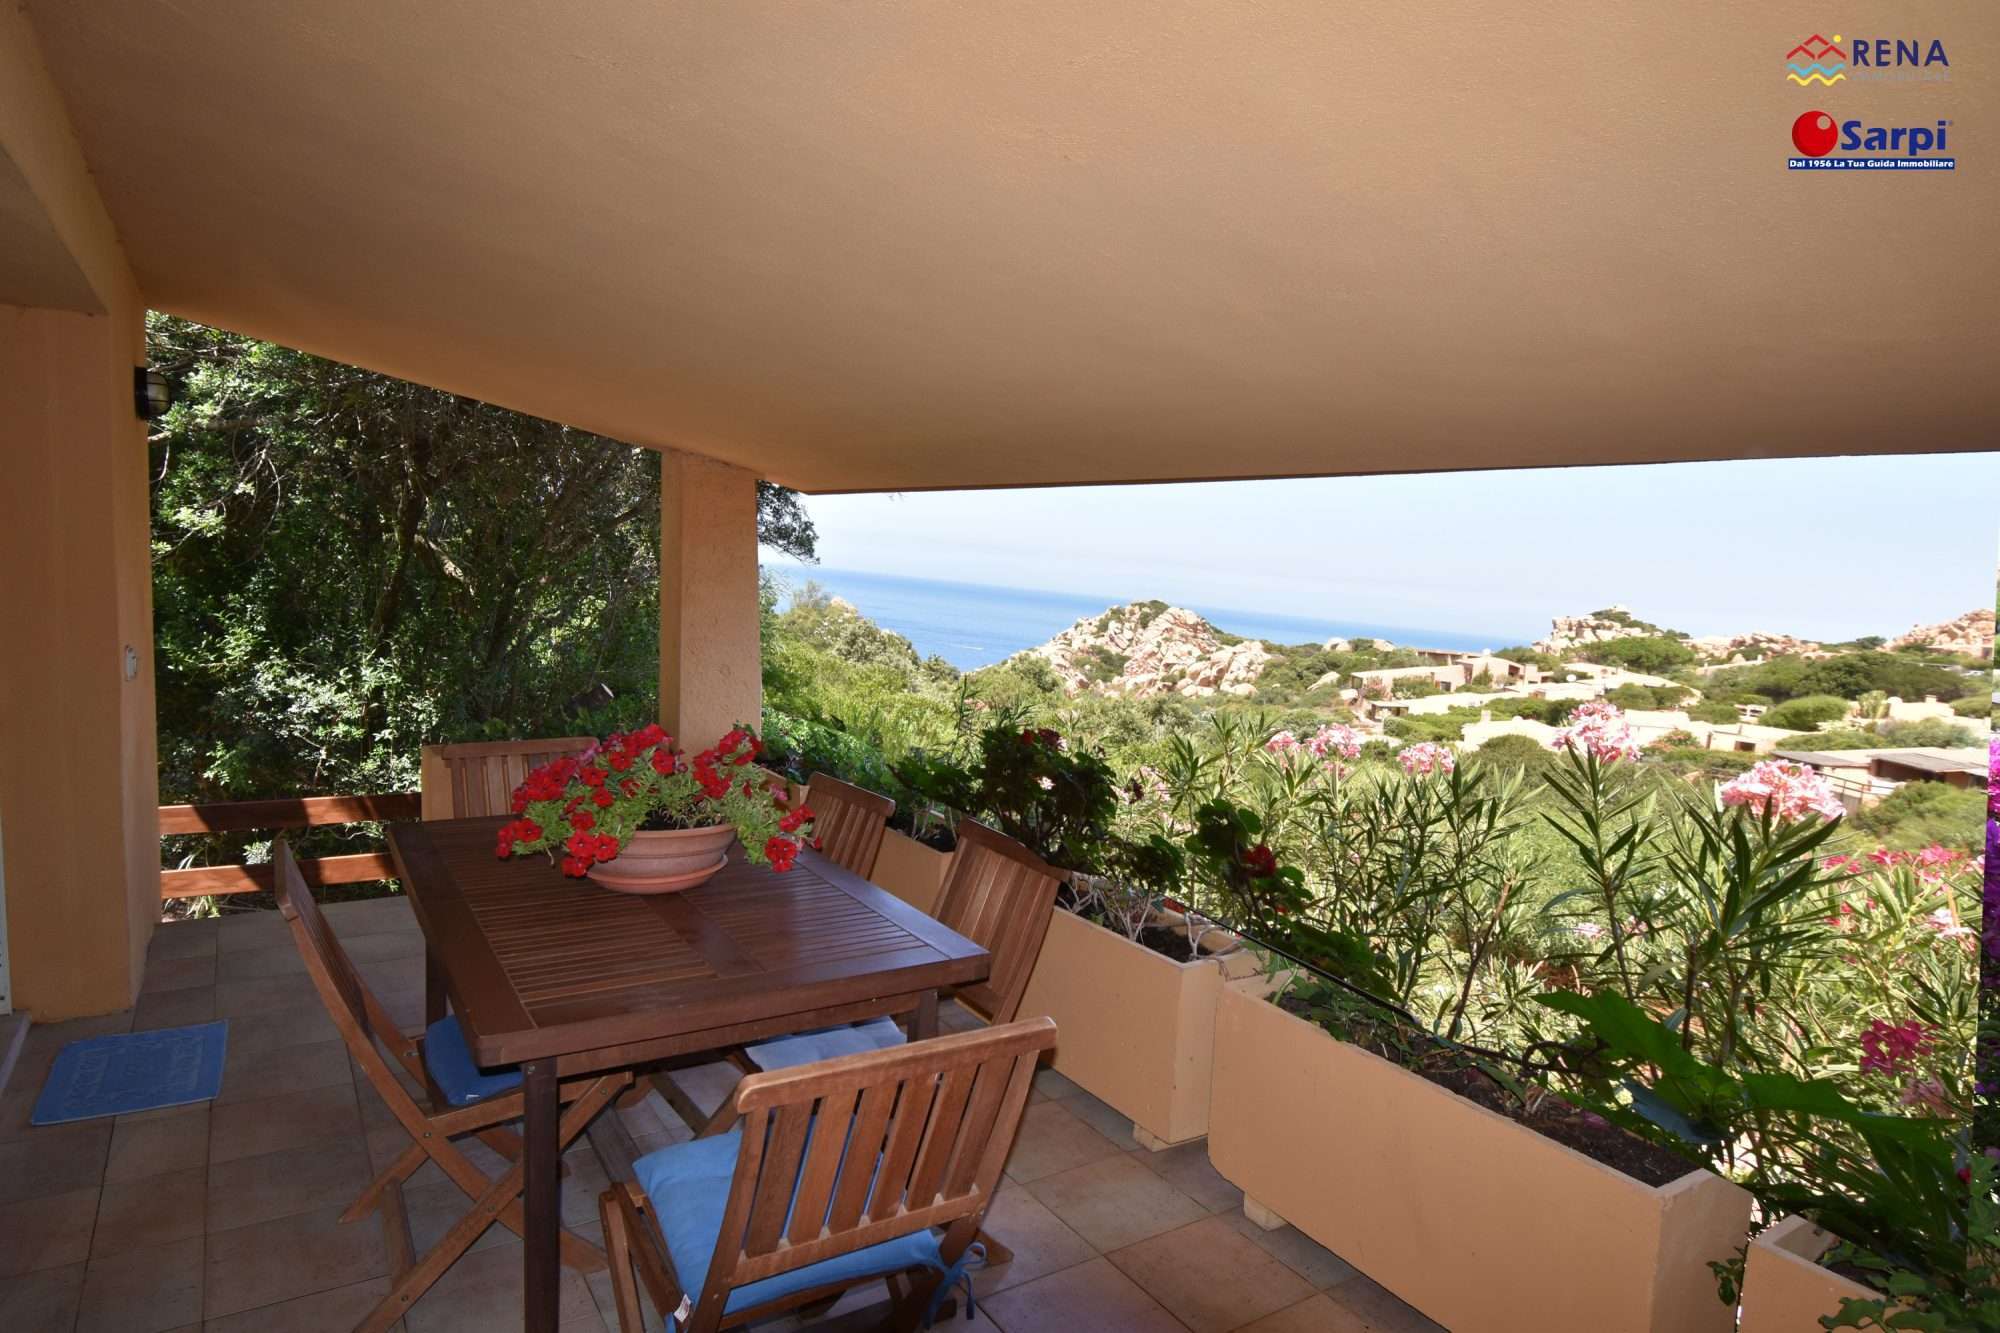 Interessante villetta con veranda coperta e vista mare – Costa Paradiso